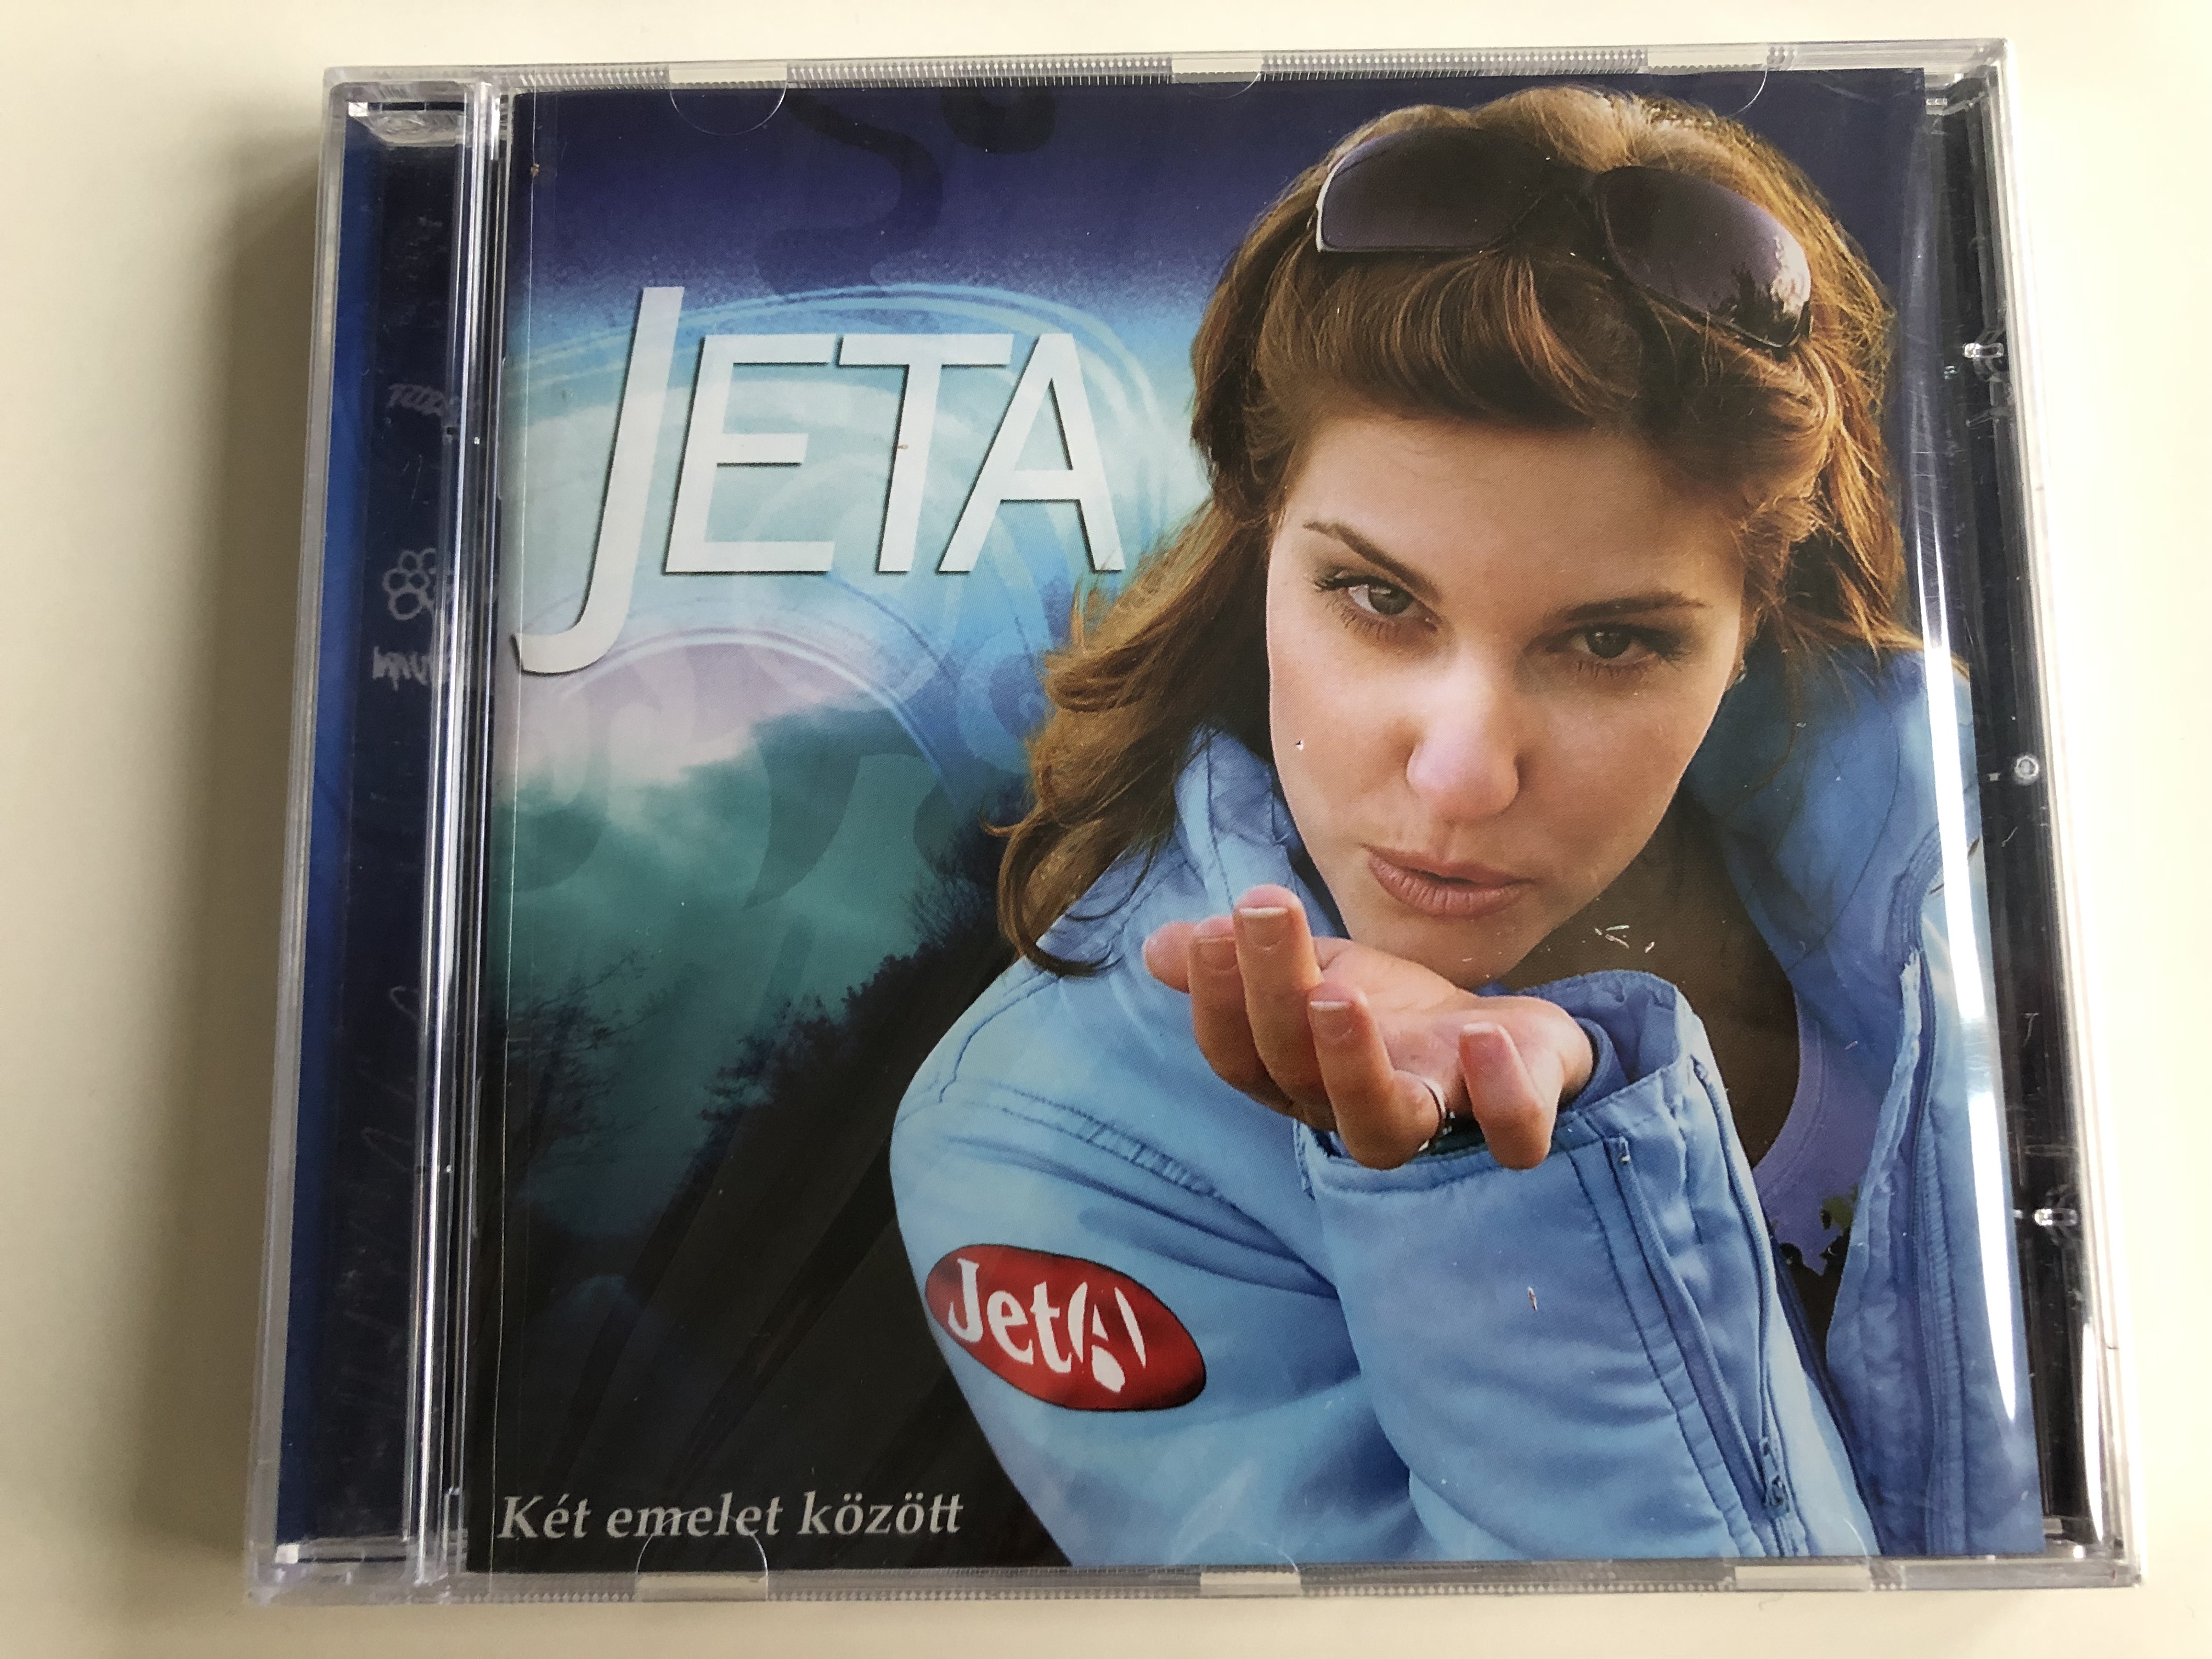 jeta-k-t-emelet-k-z-tt-csak-laz-n-vadvir-g-fekete-zvegy-m-z-a-te-ban-helyb-l-kett-be-operentzia-mix-audio-cd-2004-1-.jpg